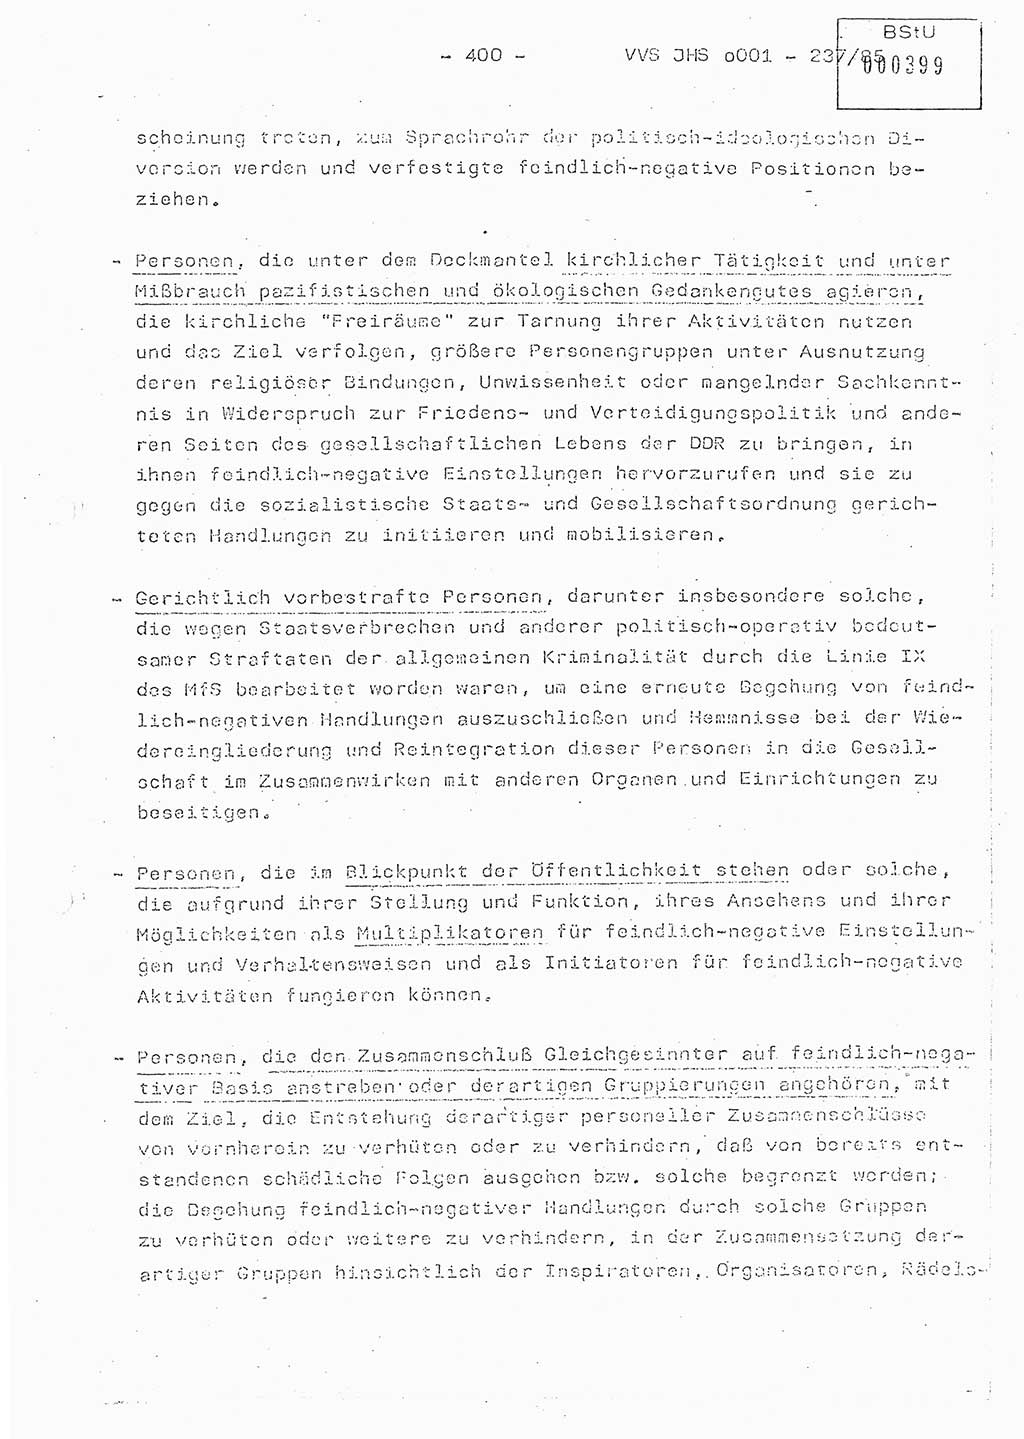 Dissertation Oberstleutnant Peter Jakulski (JHS), Oberstleutnat Christian Rudolph (HA Ⅸ), Major Horst Böttger (ZMD), Major Wolfgang Grüneberg (JHS), Major Albert Meutsch (JHS), Ministerium für Staatssicherheit (MfS) [Deutsche Demokratische Republik (DDR)], Juristische Hochschule (JHS), Vertrauliche Verschlußsache (VVS) o001-237/85, Potsdam 1985, Seite 400 (Diss. MfS DDR JHS VVS o001-237/85 1985, S. 400)